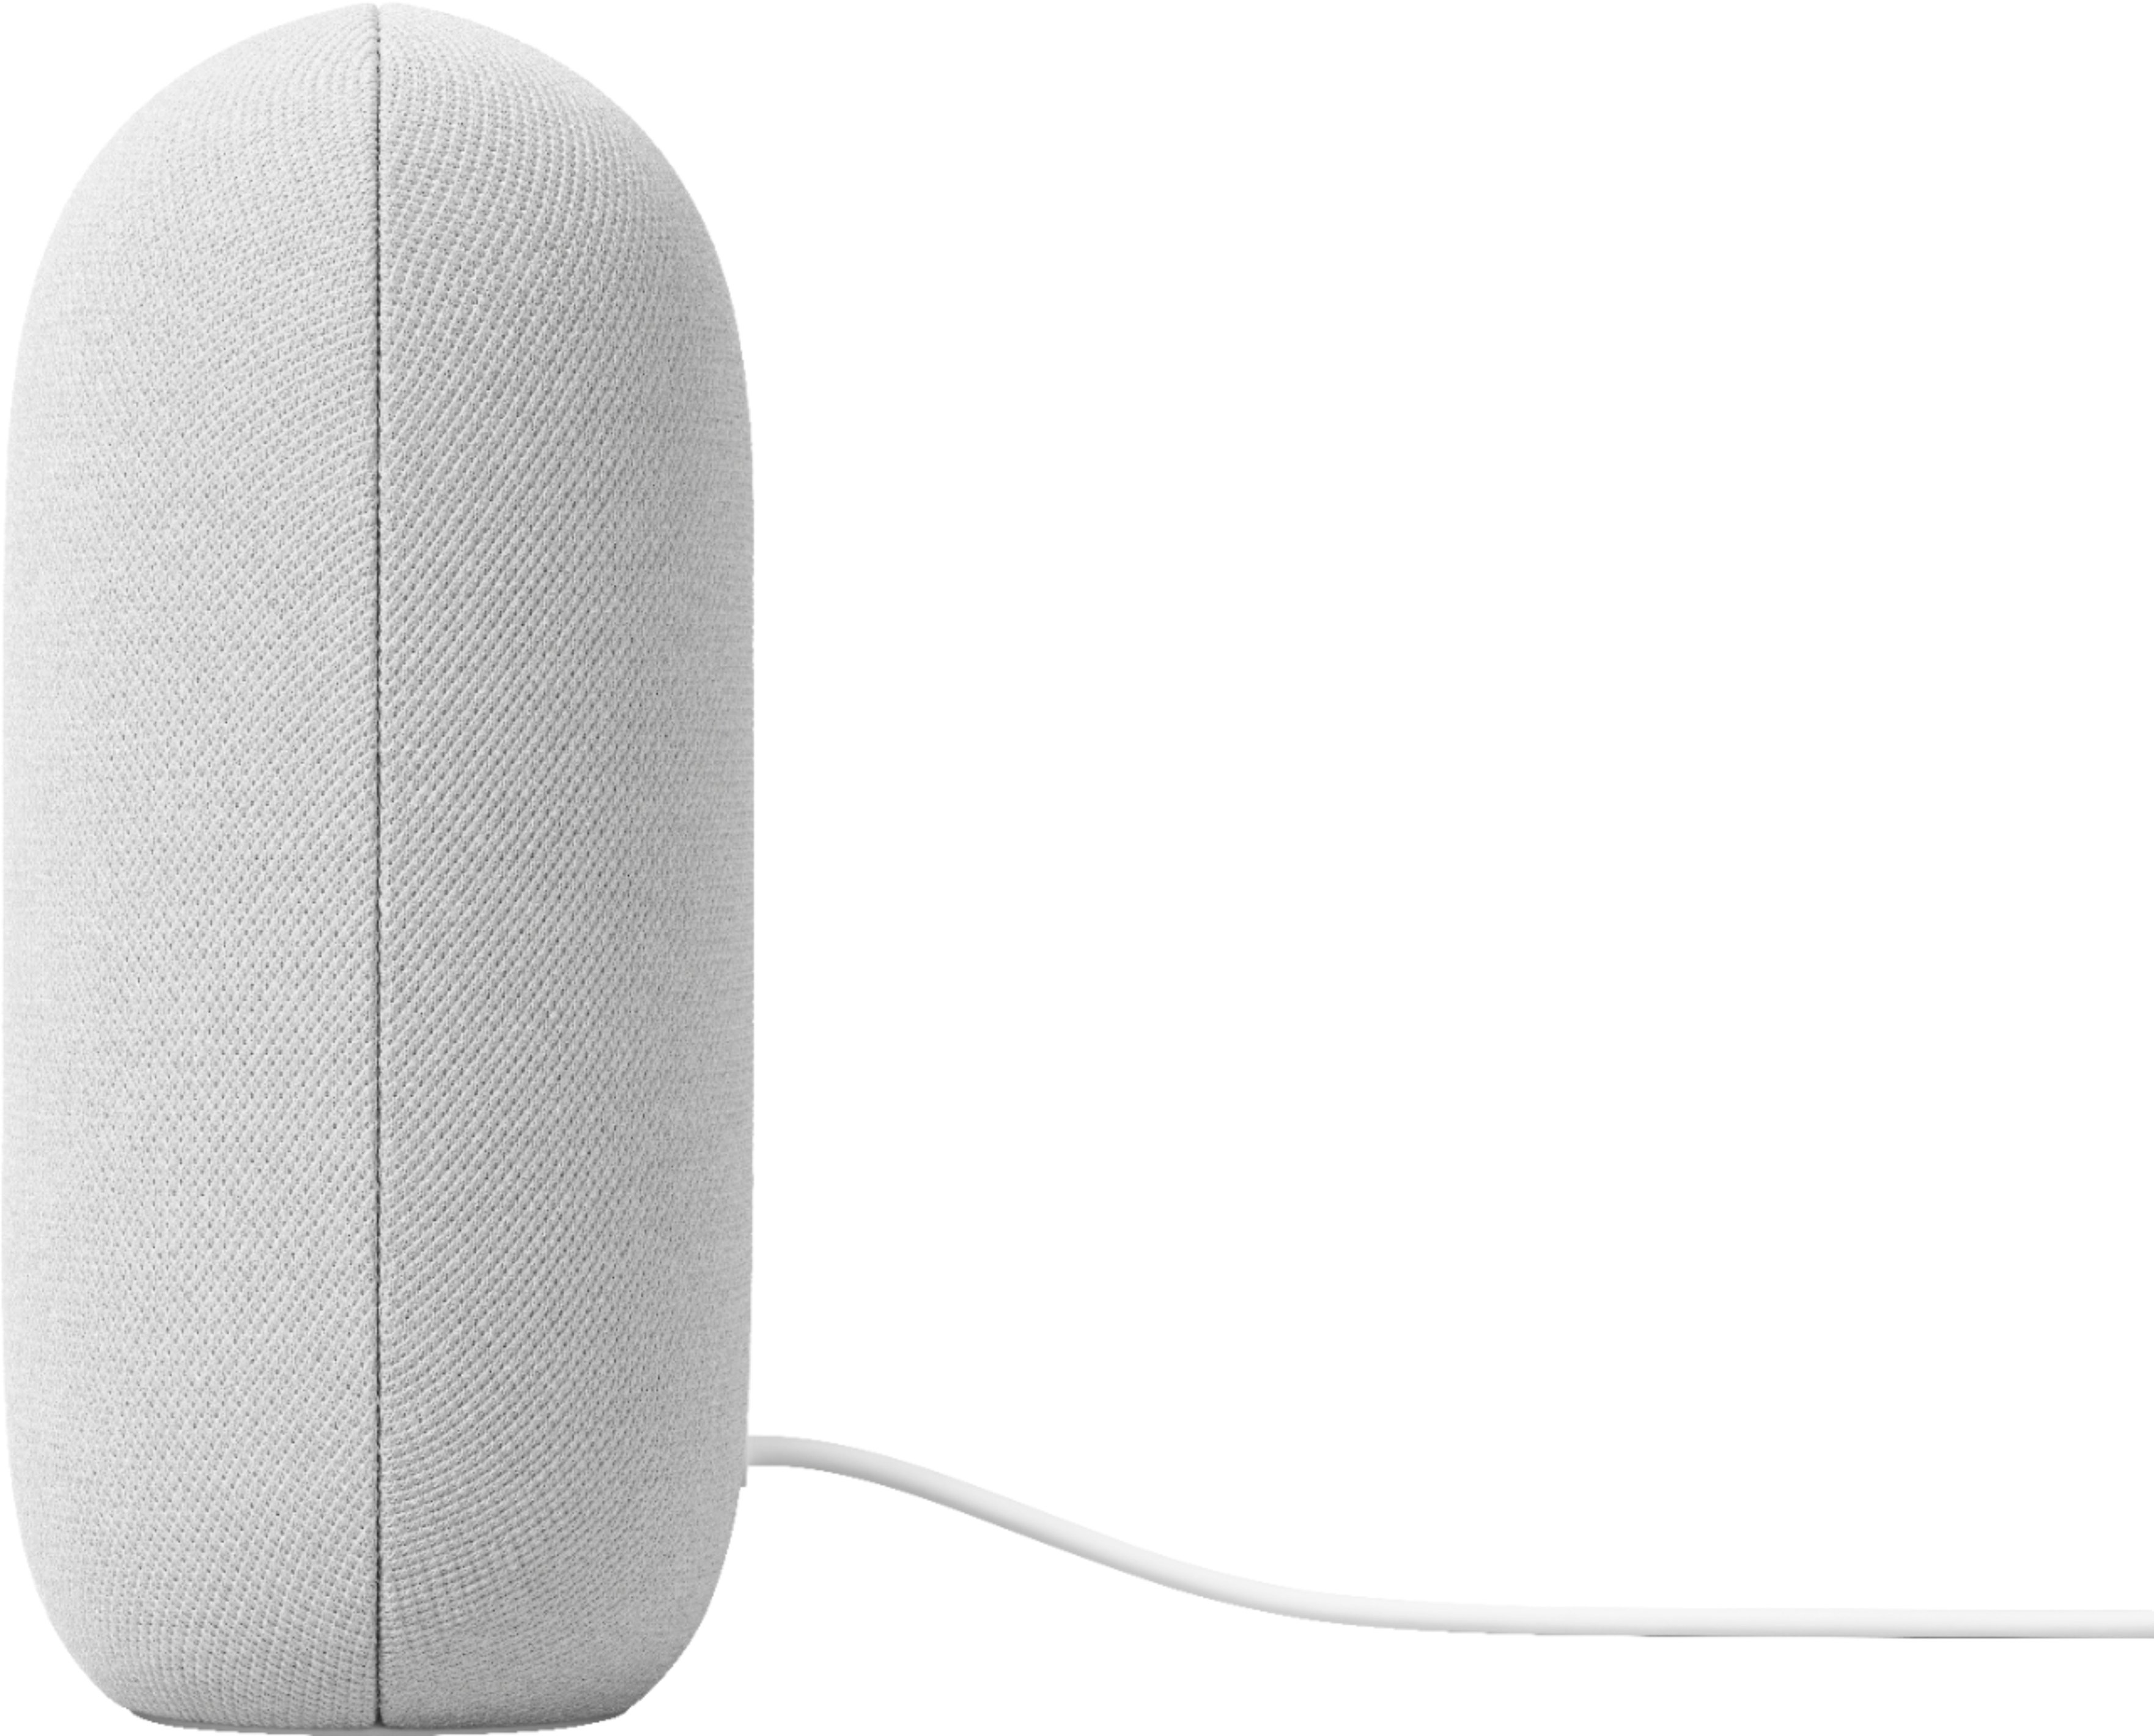 Google Nest Mini - A Smart Speaker for Any Room - Google Store